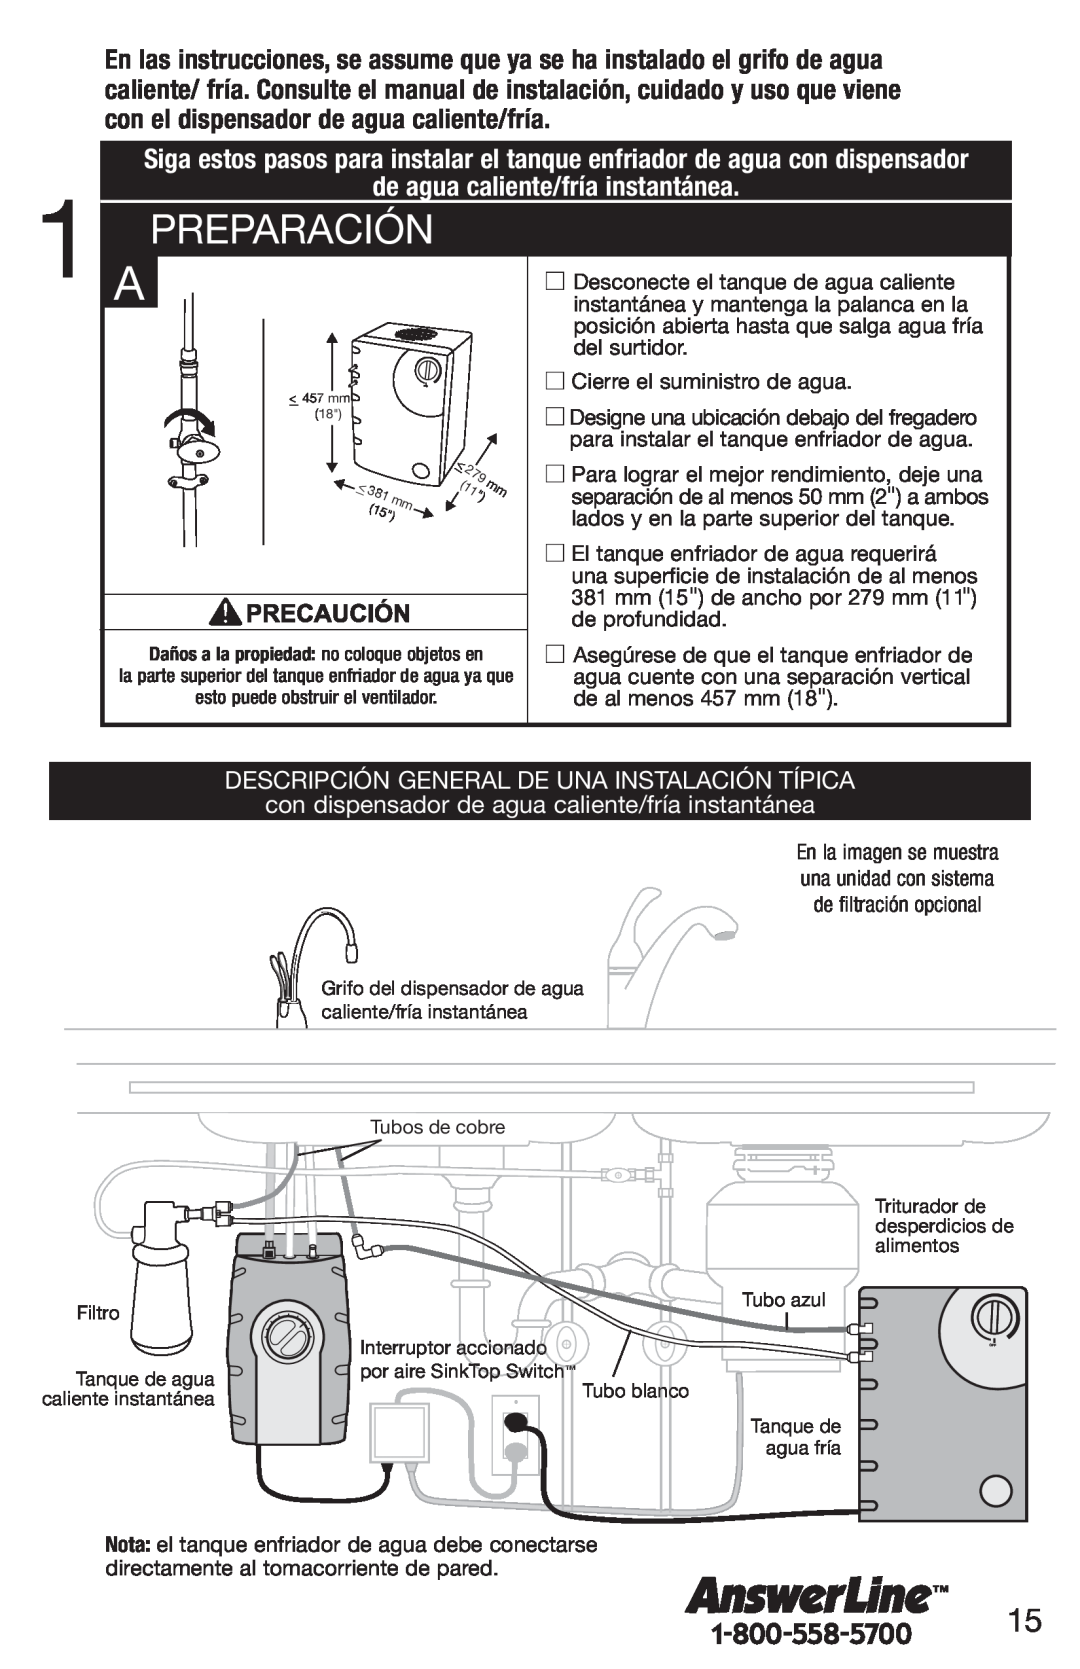 InSinkErator F-C1100, CWT-00 Preparación, de agua caliente/fría instantánea, Descripción General De Una Instalación Típica 